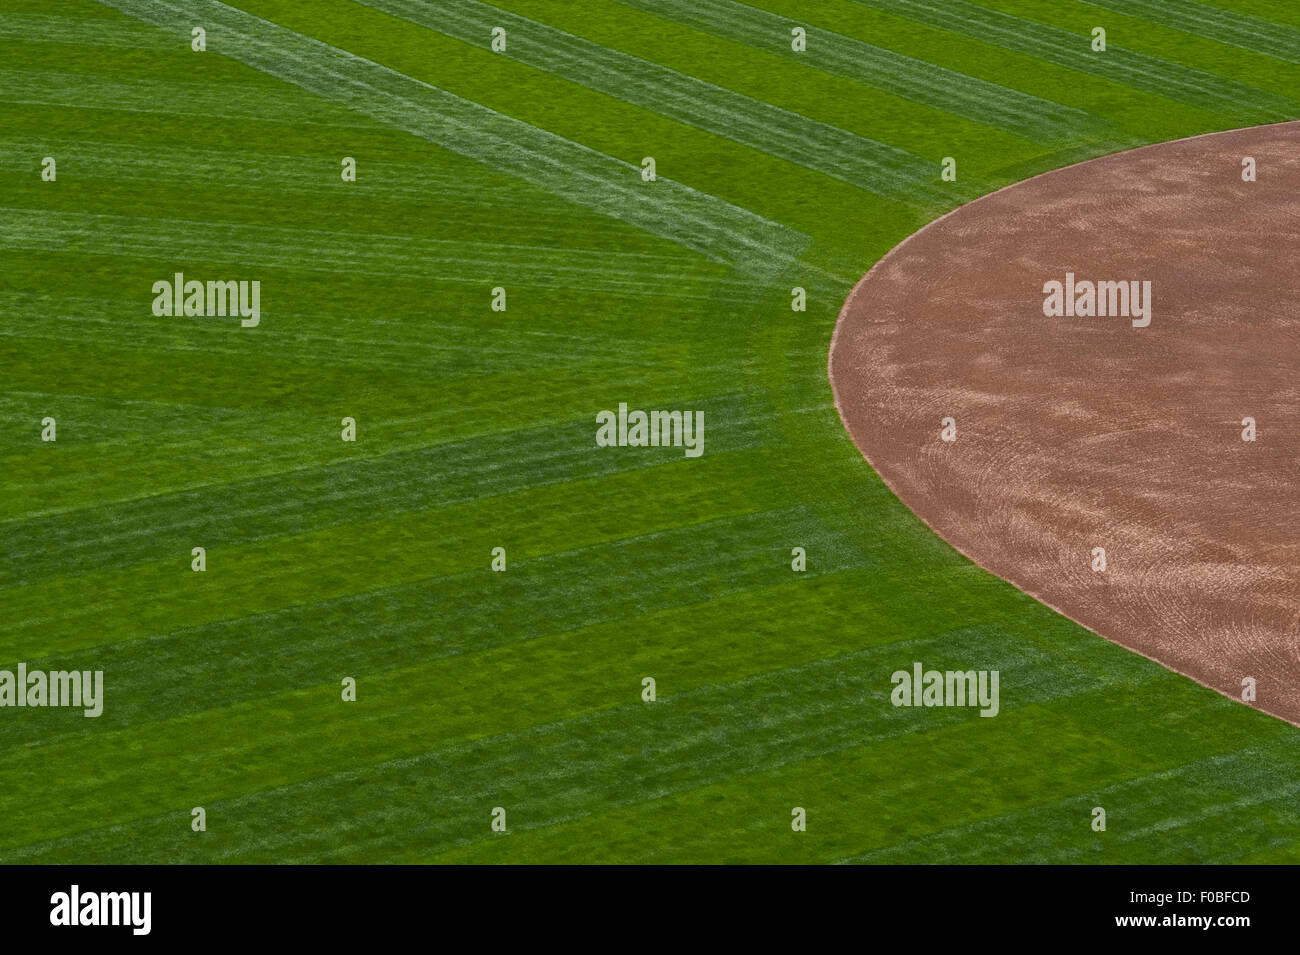 Baseball immagini e fotografie stock ad alta risoluzione - Alamy